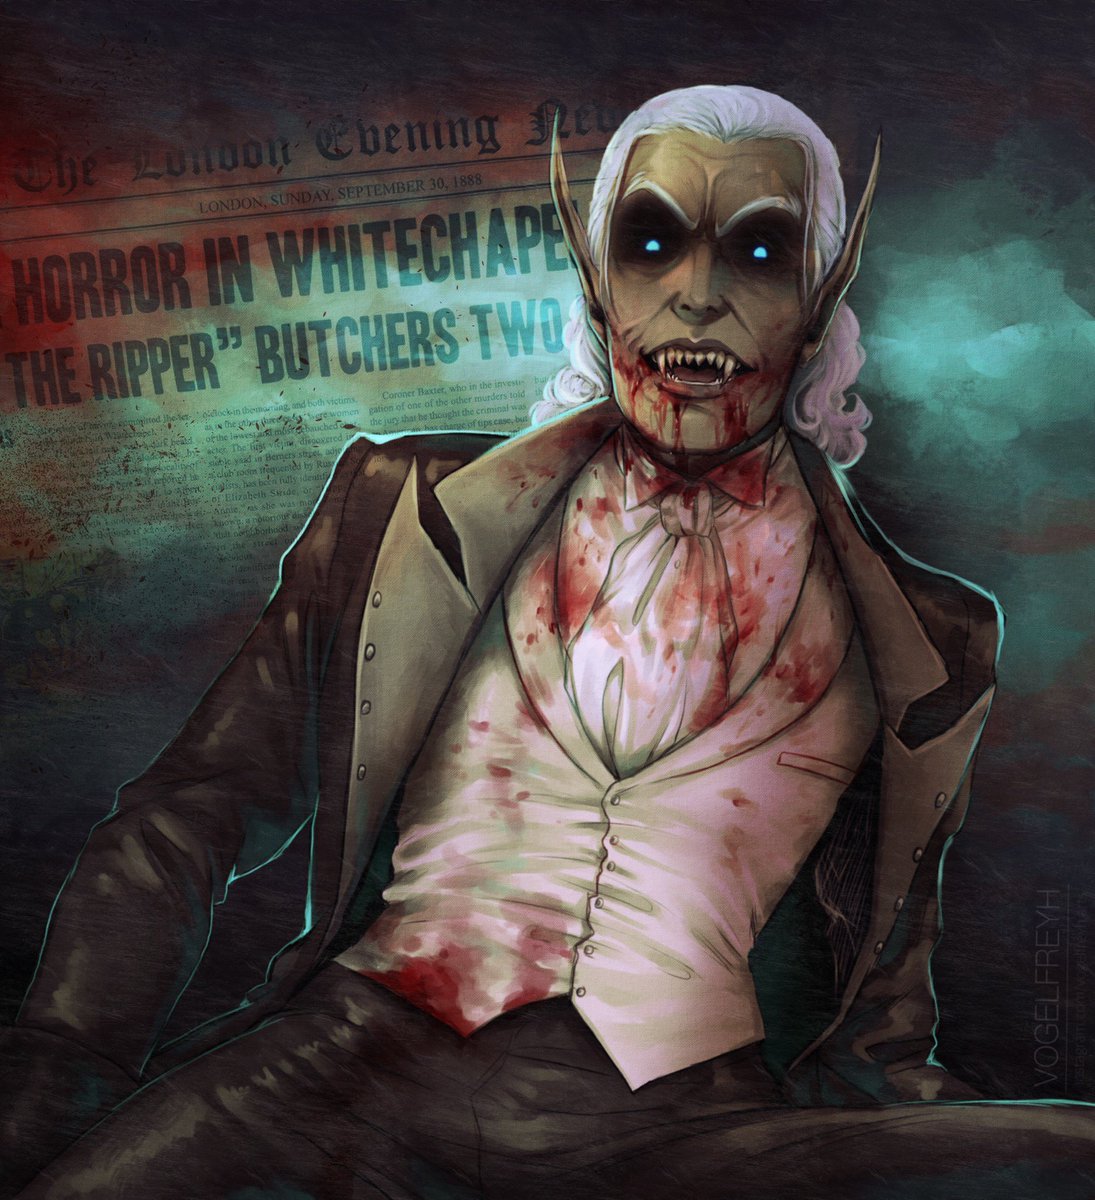 Whitechapel Horrors 🥴
#vampire #vampires #originalcharacter